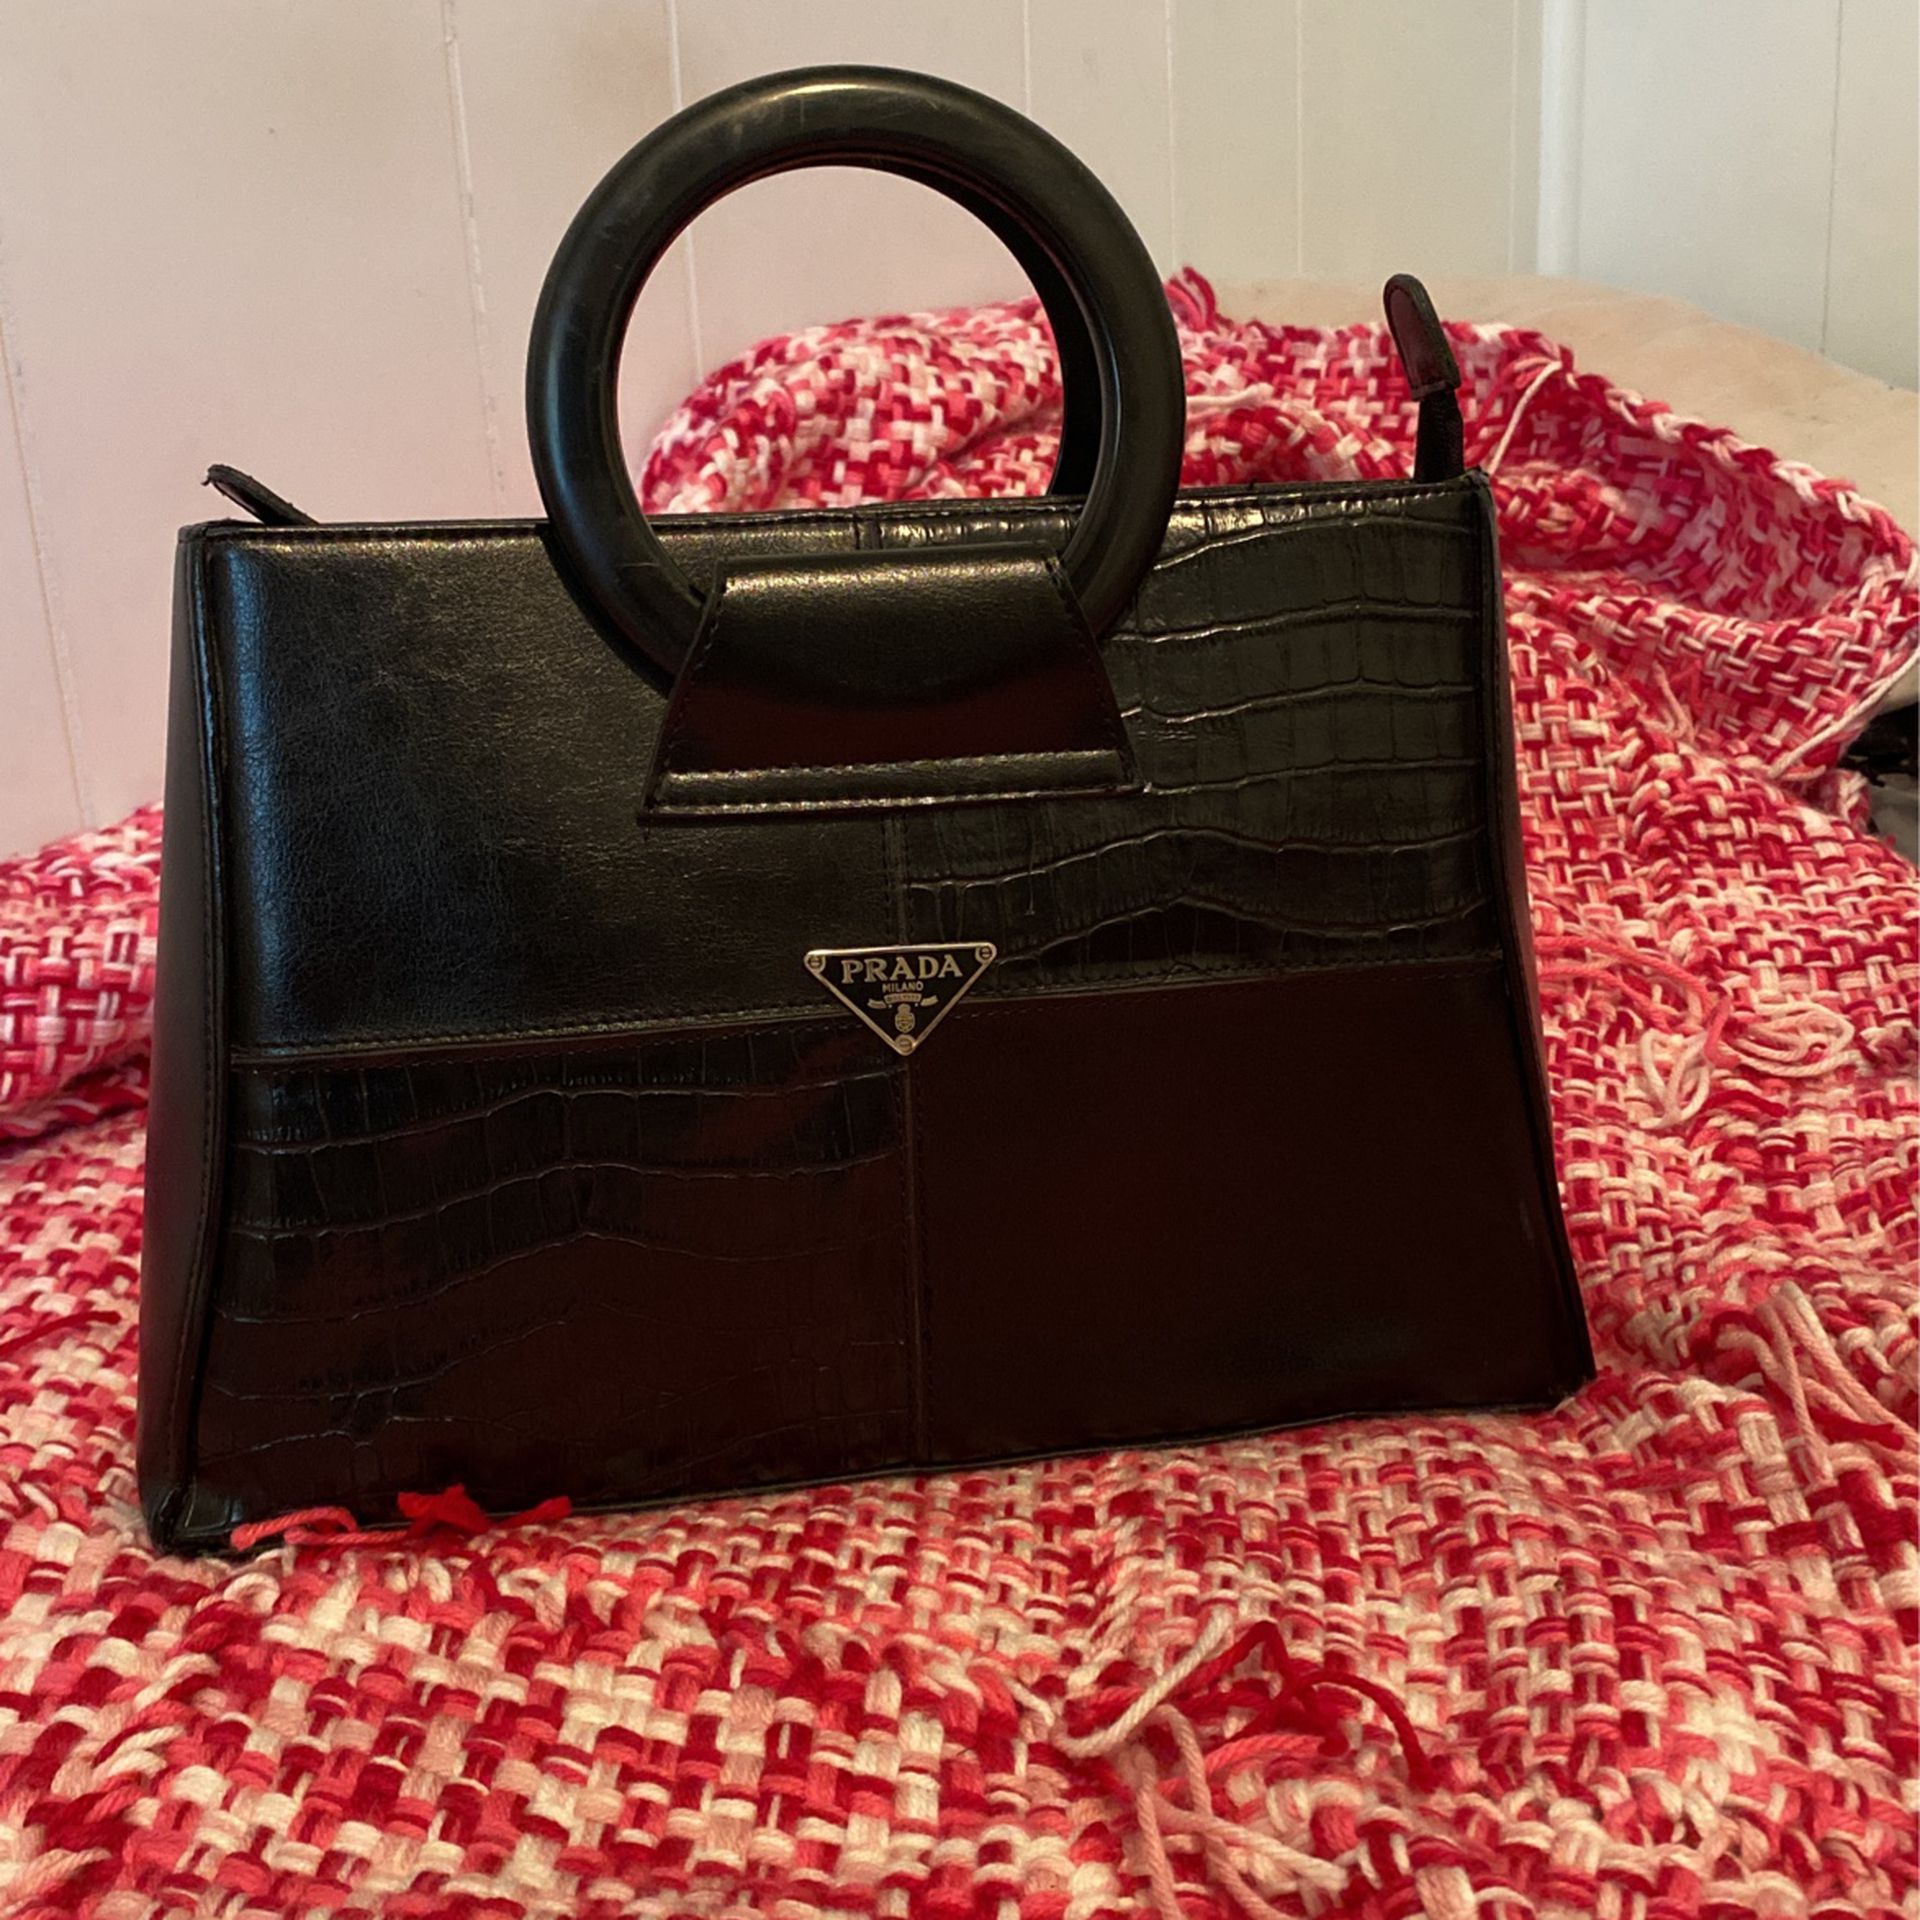 Prada Milano In Women's Bags & Handbags for sale